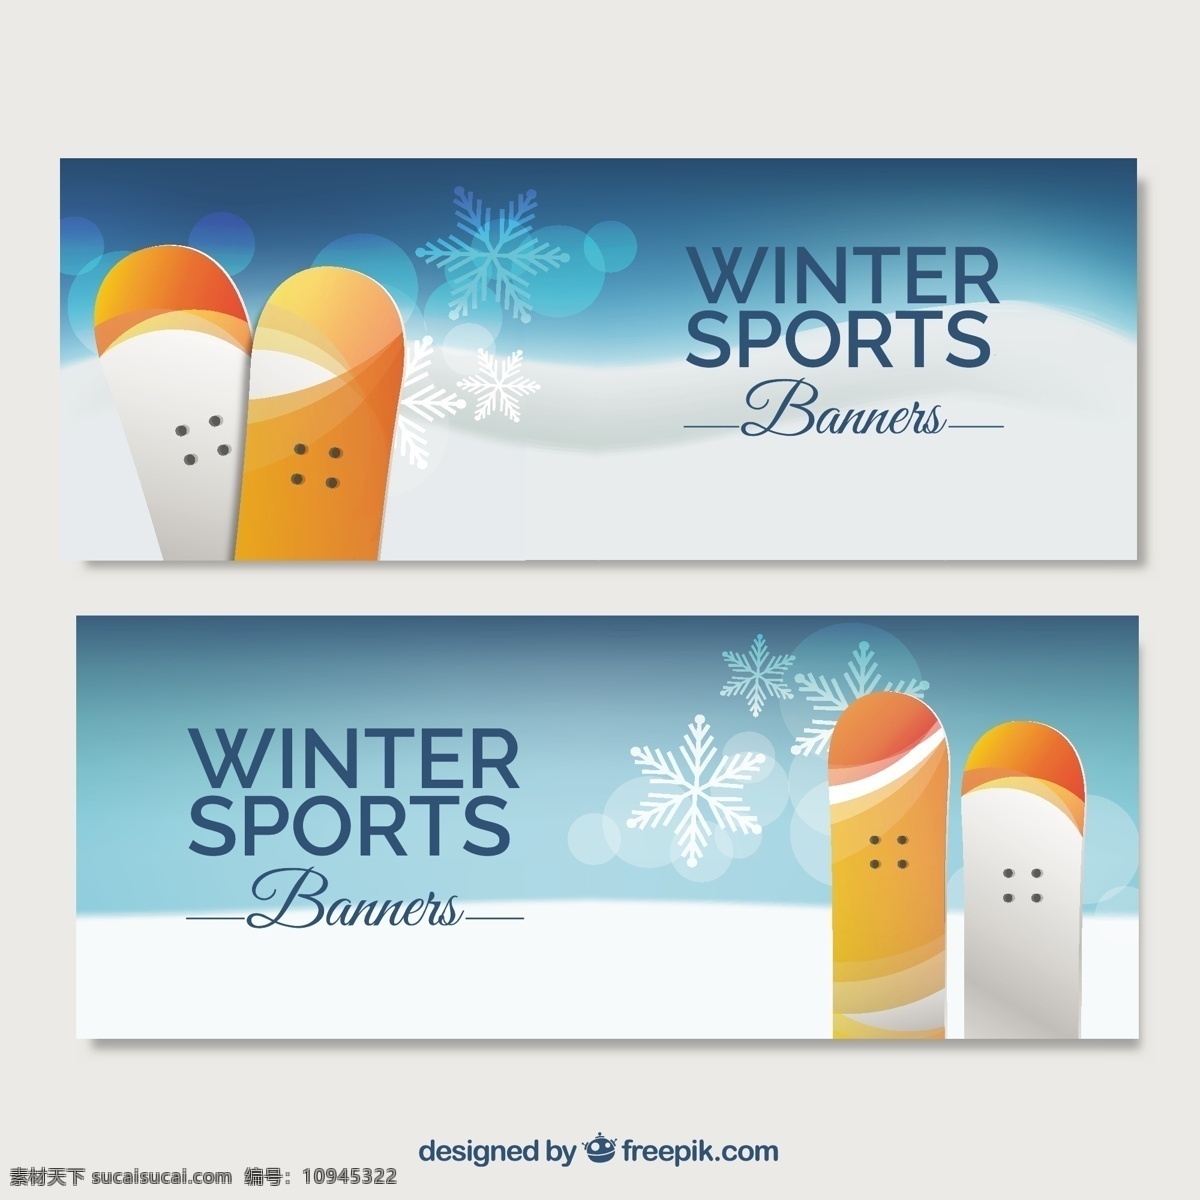 冬季运动旗帜 横幅 冬季 模板 运动 健身 训练 寒冷 滑雪板 锻炼 生活方式 季节 适合 集 冬季运动 适应